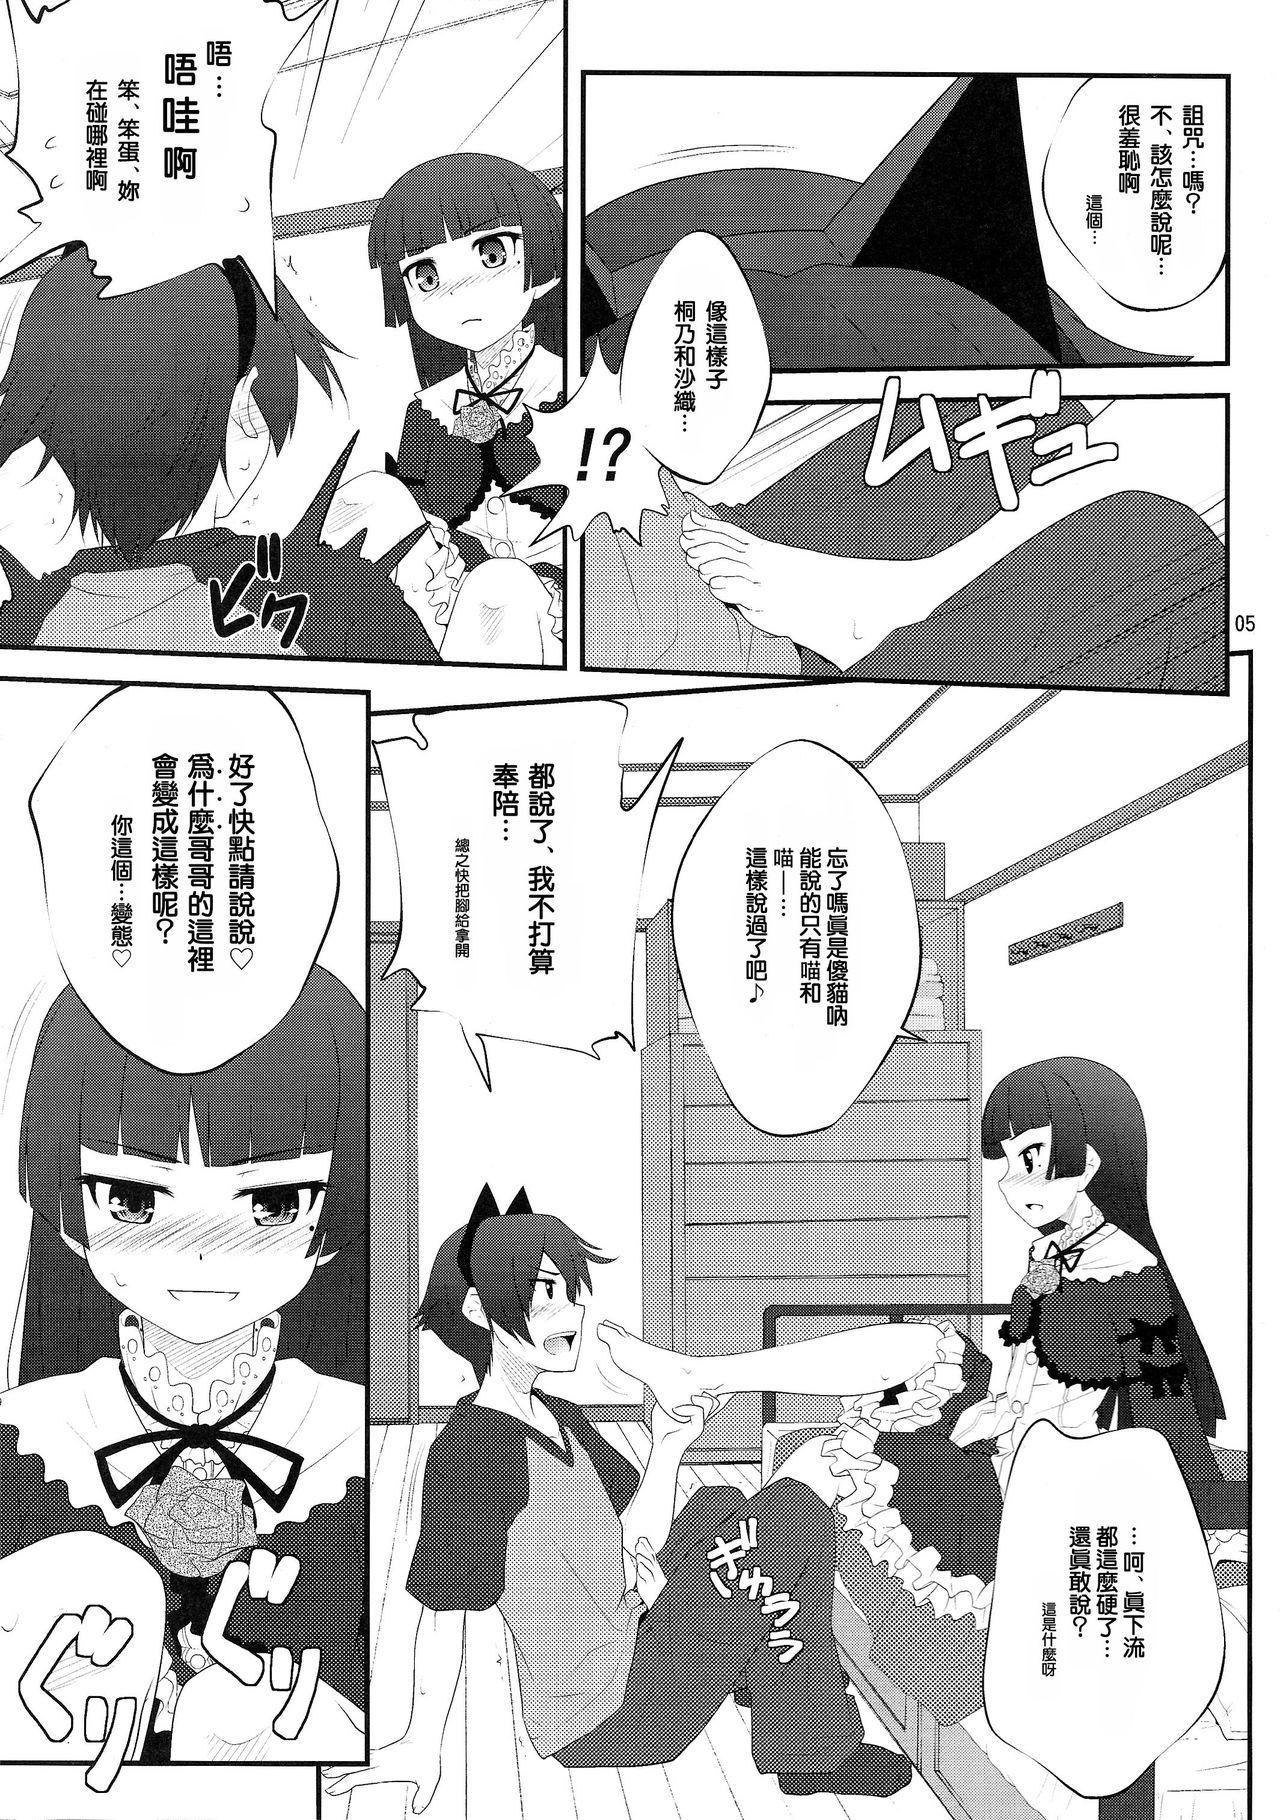 Prima Nii-san, Ashi Monde Choudai After - Ore no imouto ga konna ni kawaii wake ga nai Action - Page 5